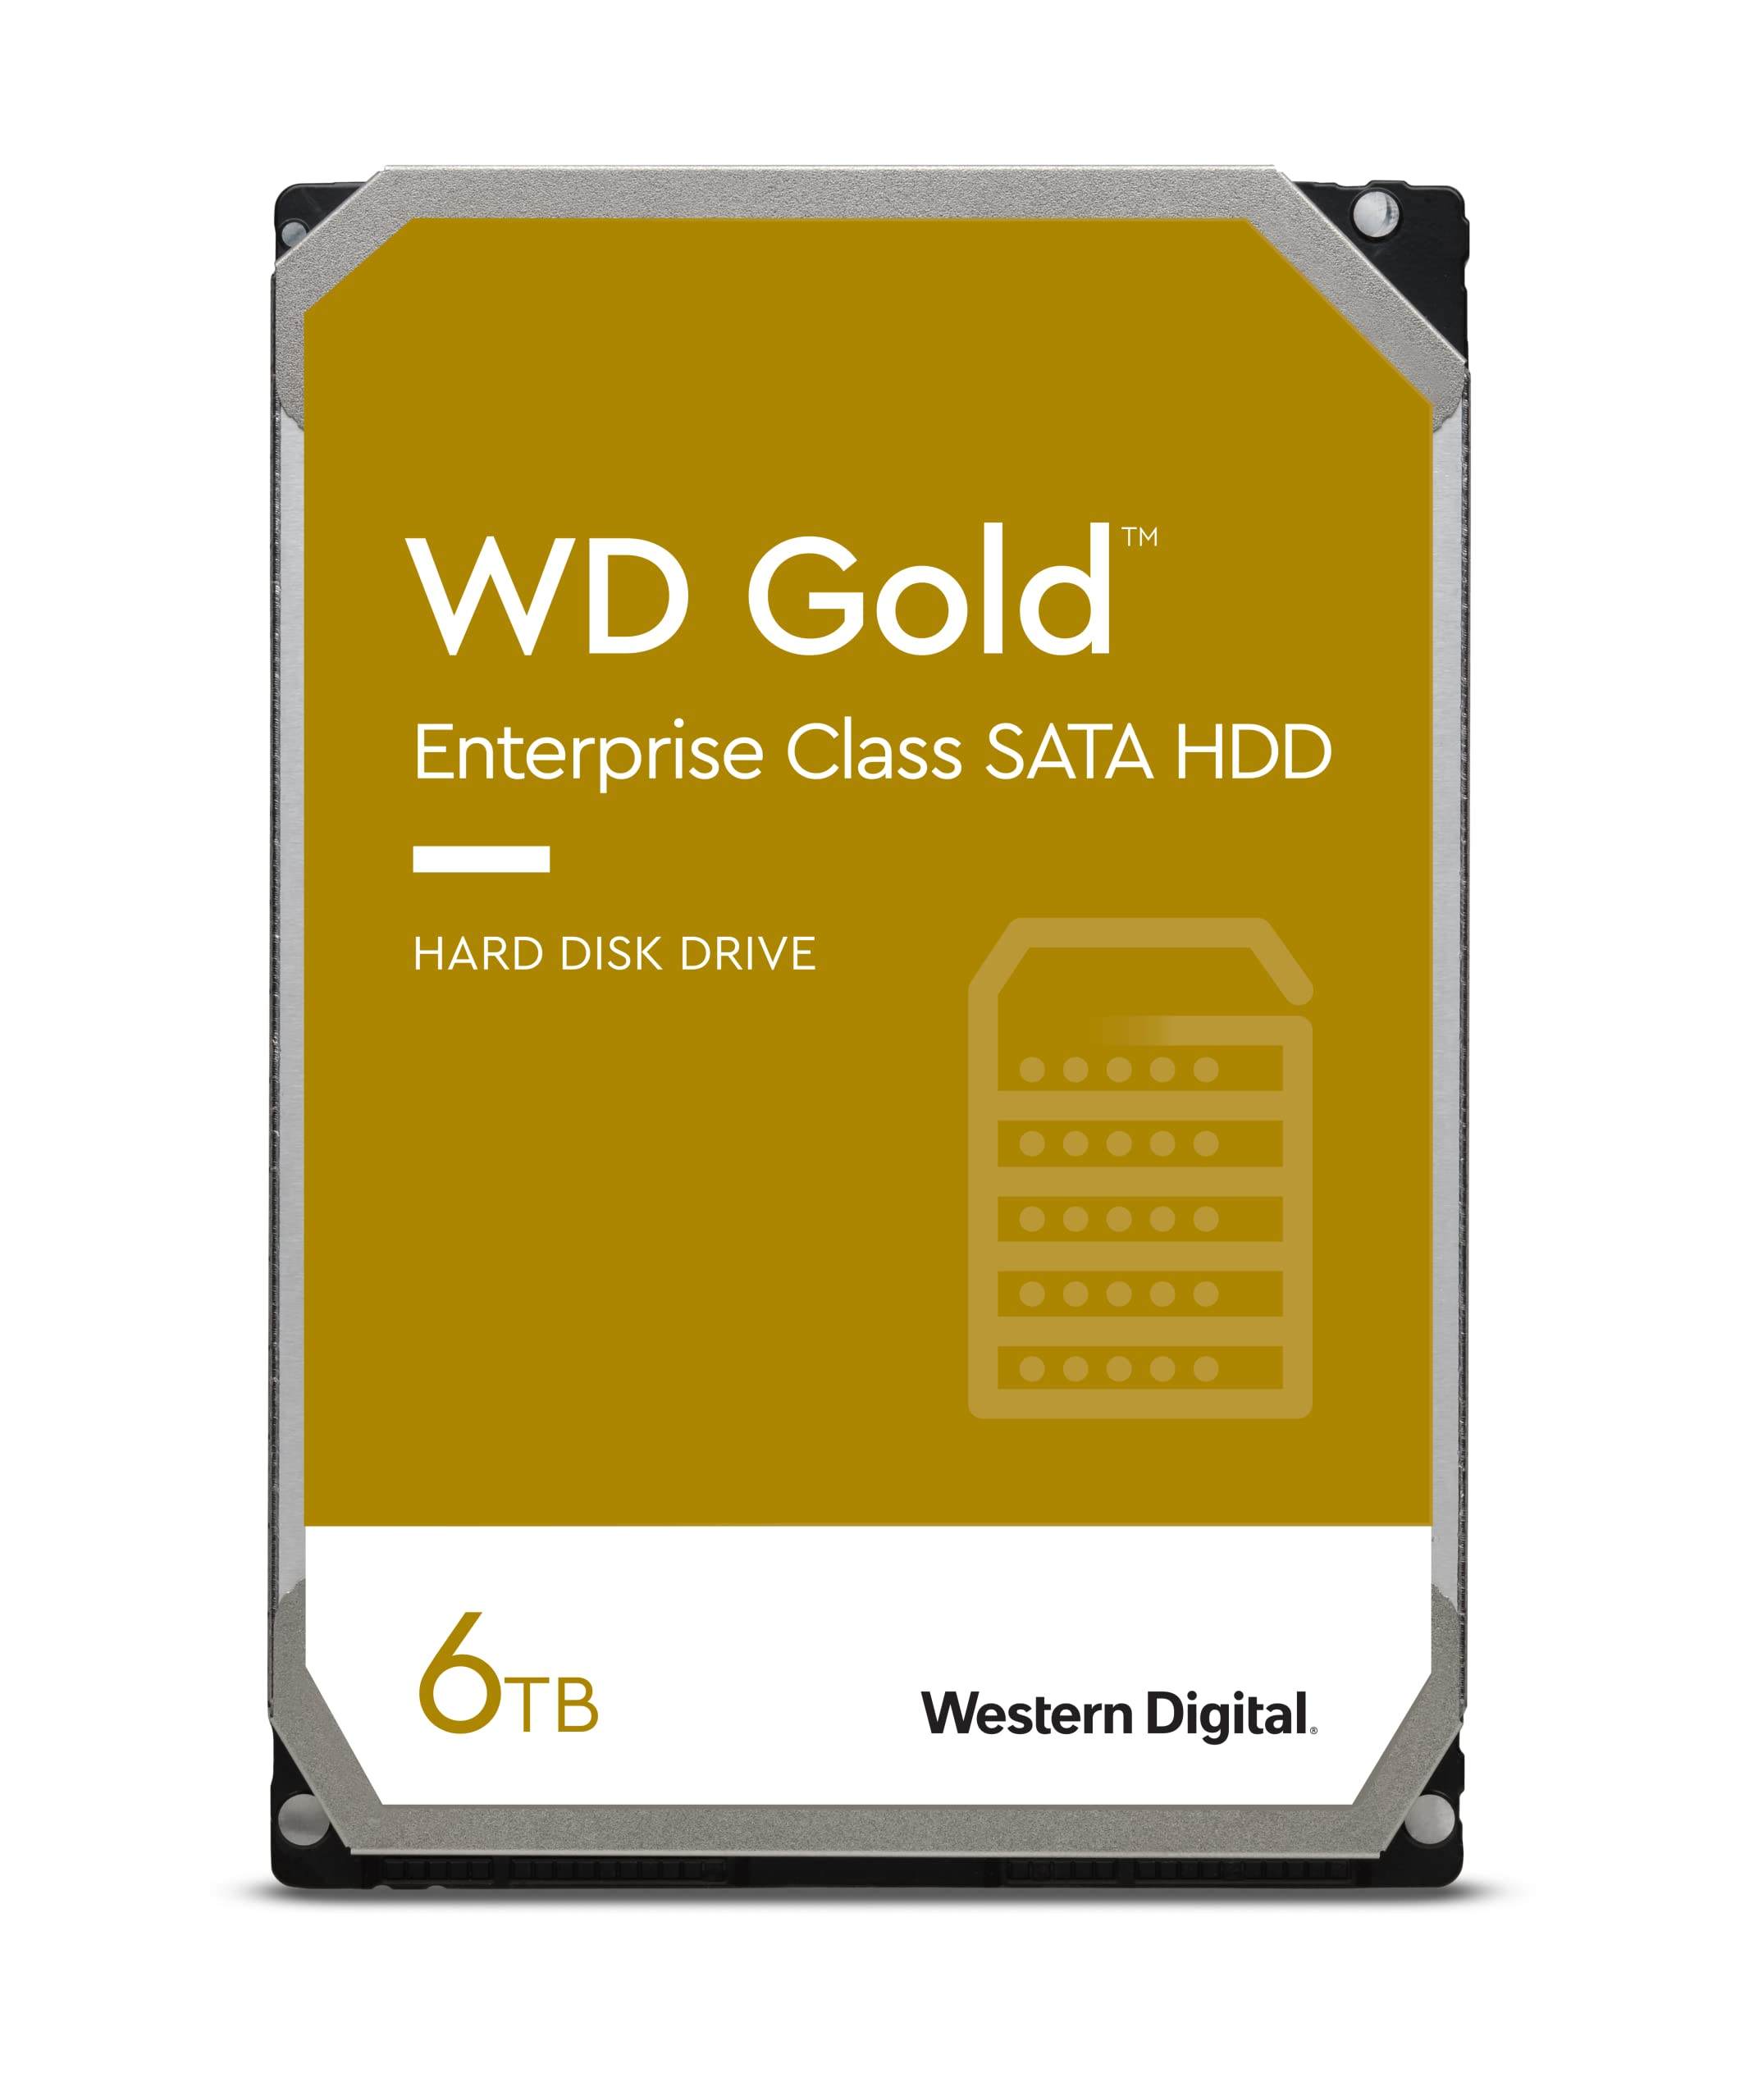 Western Digital HDD 6TB WD Gold エンタープライズ 3.5インチ 内蔵HDD WD6003FRYZ並行輸入品